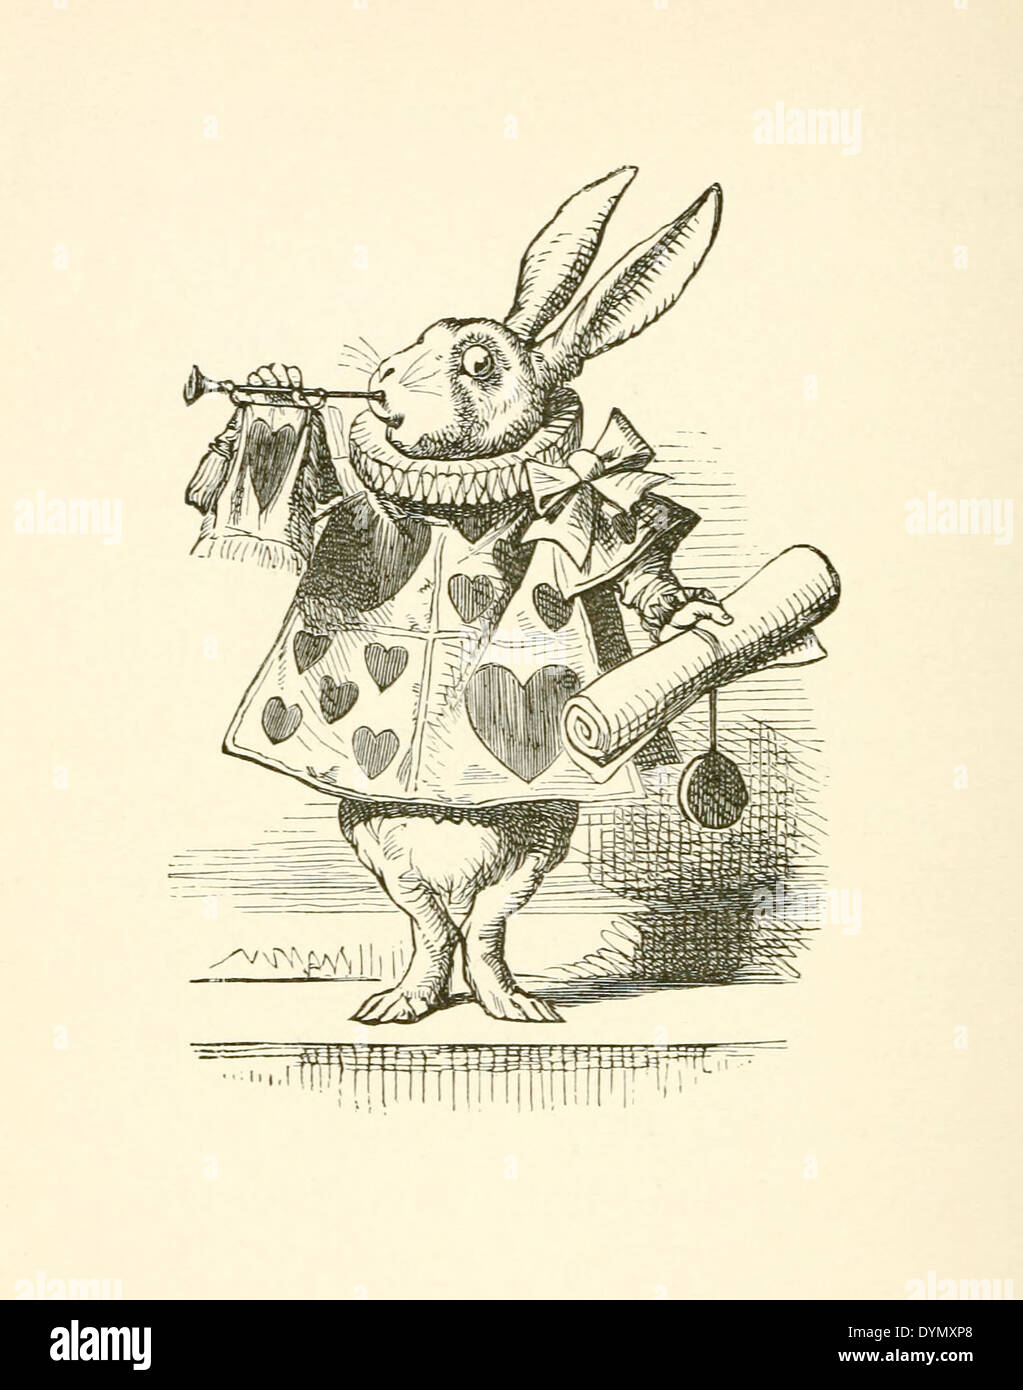 Das weiße Kaninchen mit Trompete und Scroll läutet den Vorwurf, Illustration von Sir John Tenniel (1820-1914) aus "Alice im Wunderland" von Lewis Carroll erstmals 1865 veröffentlicht. Siehe Beschreibung für mehr Informationen. Stockfoto